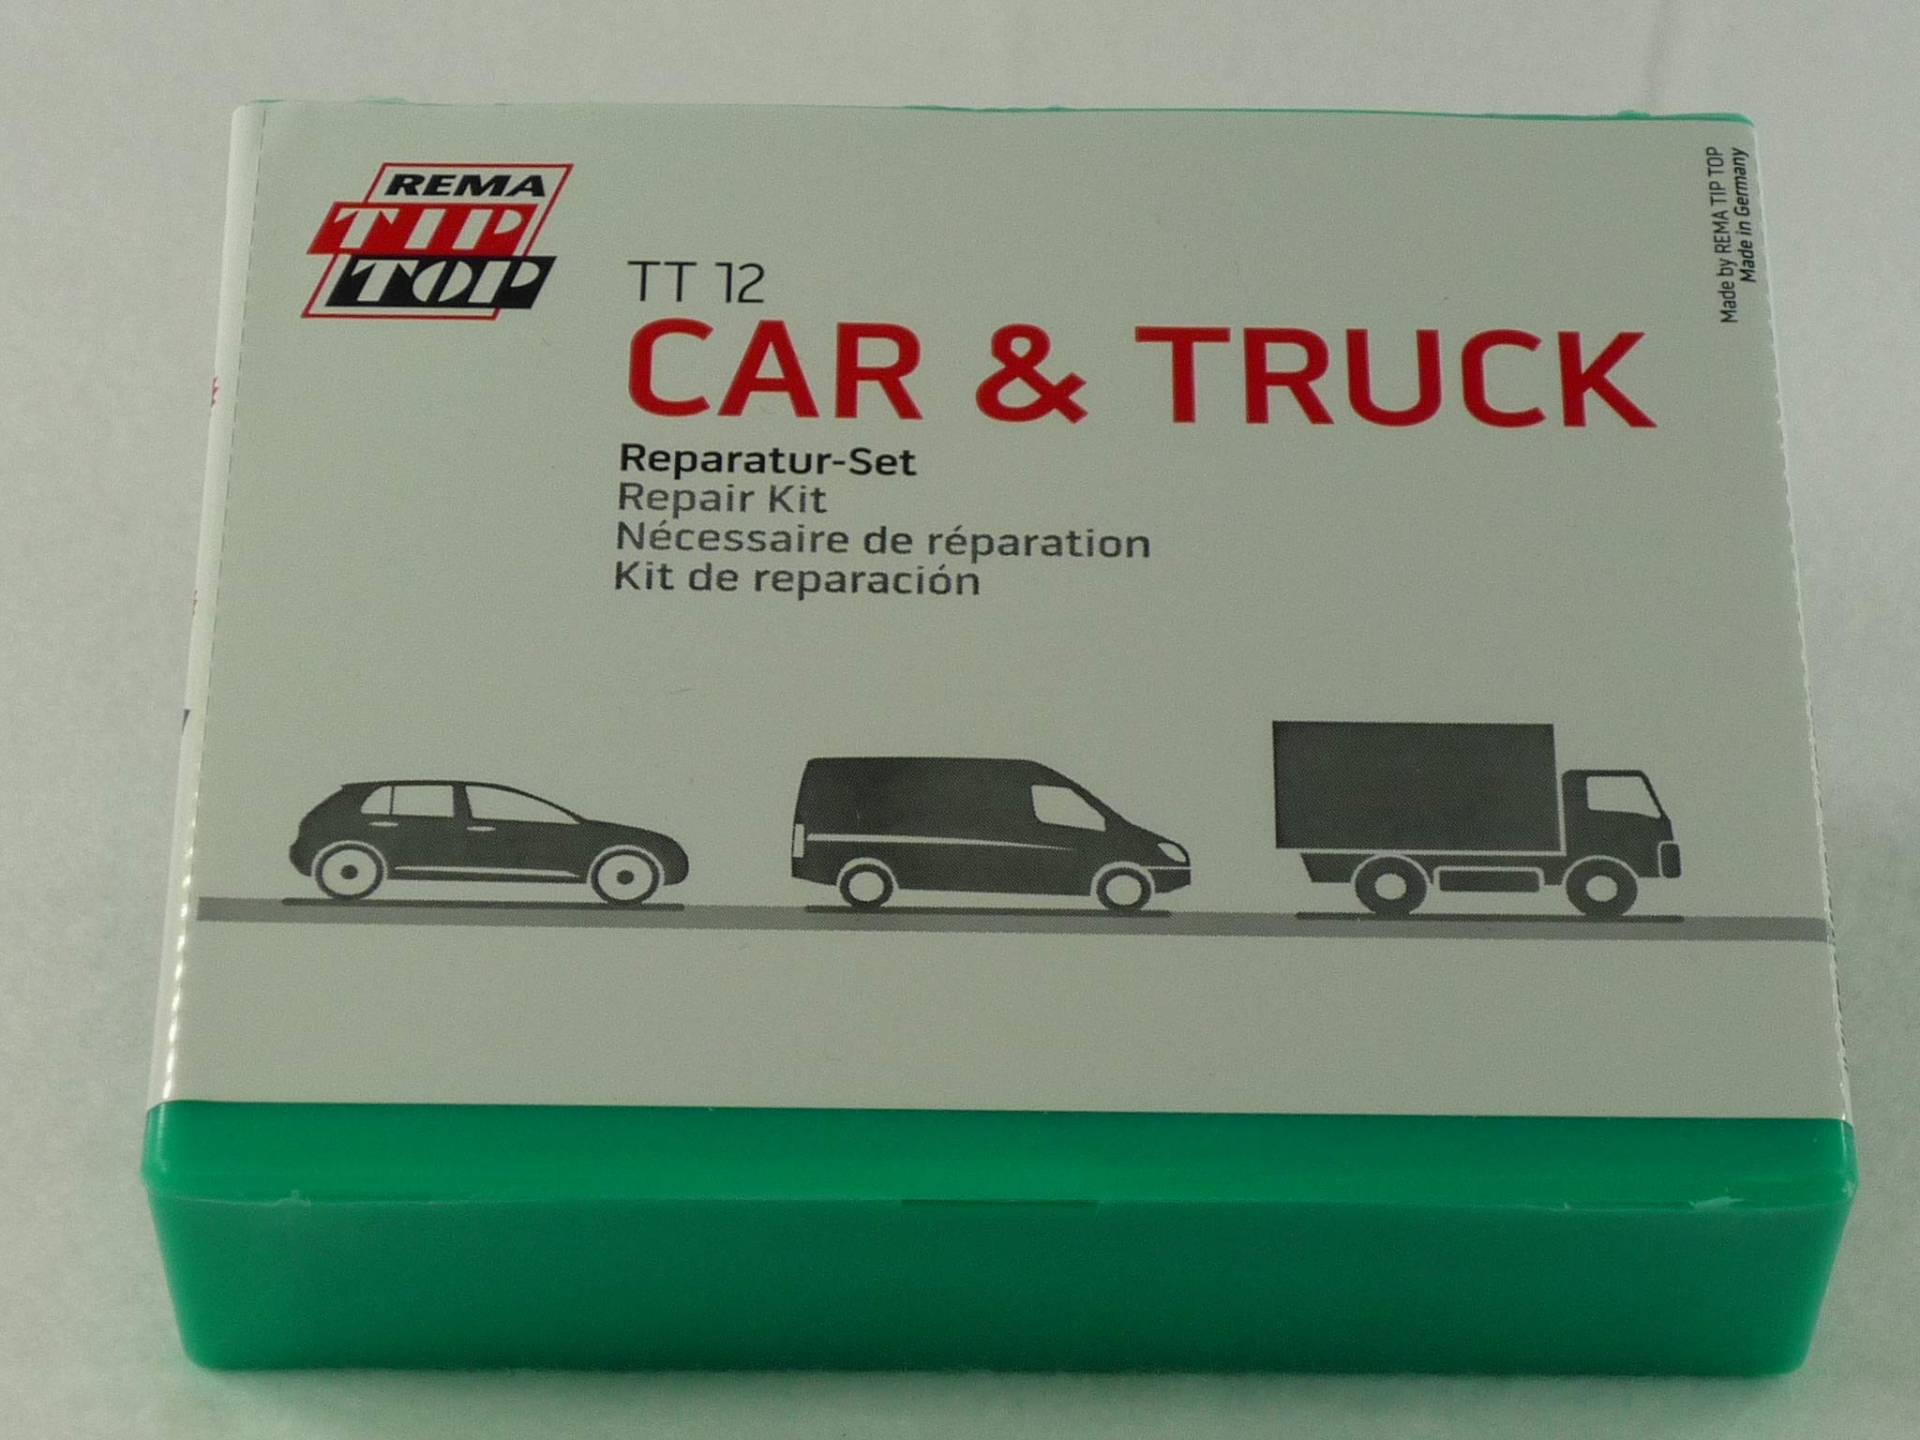 Rema Tip Top Schlauch-Reparatur-Set, Sortiment TT 12 CAR & Truck (506051) von Rema Tip Top